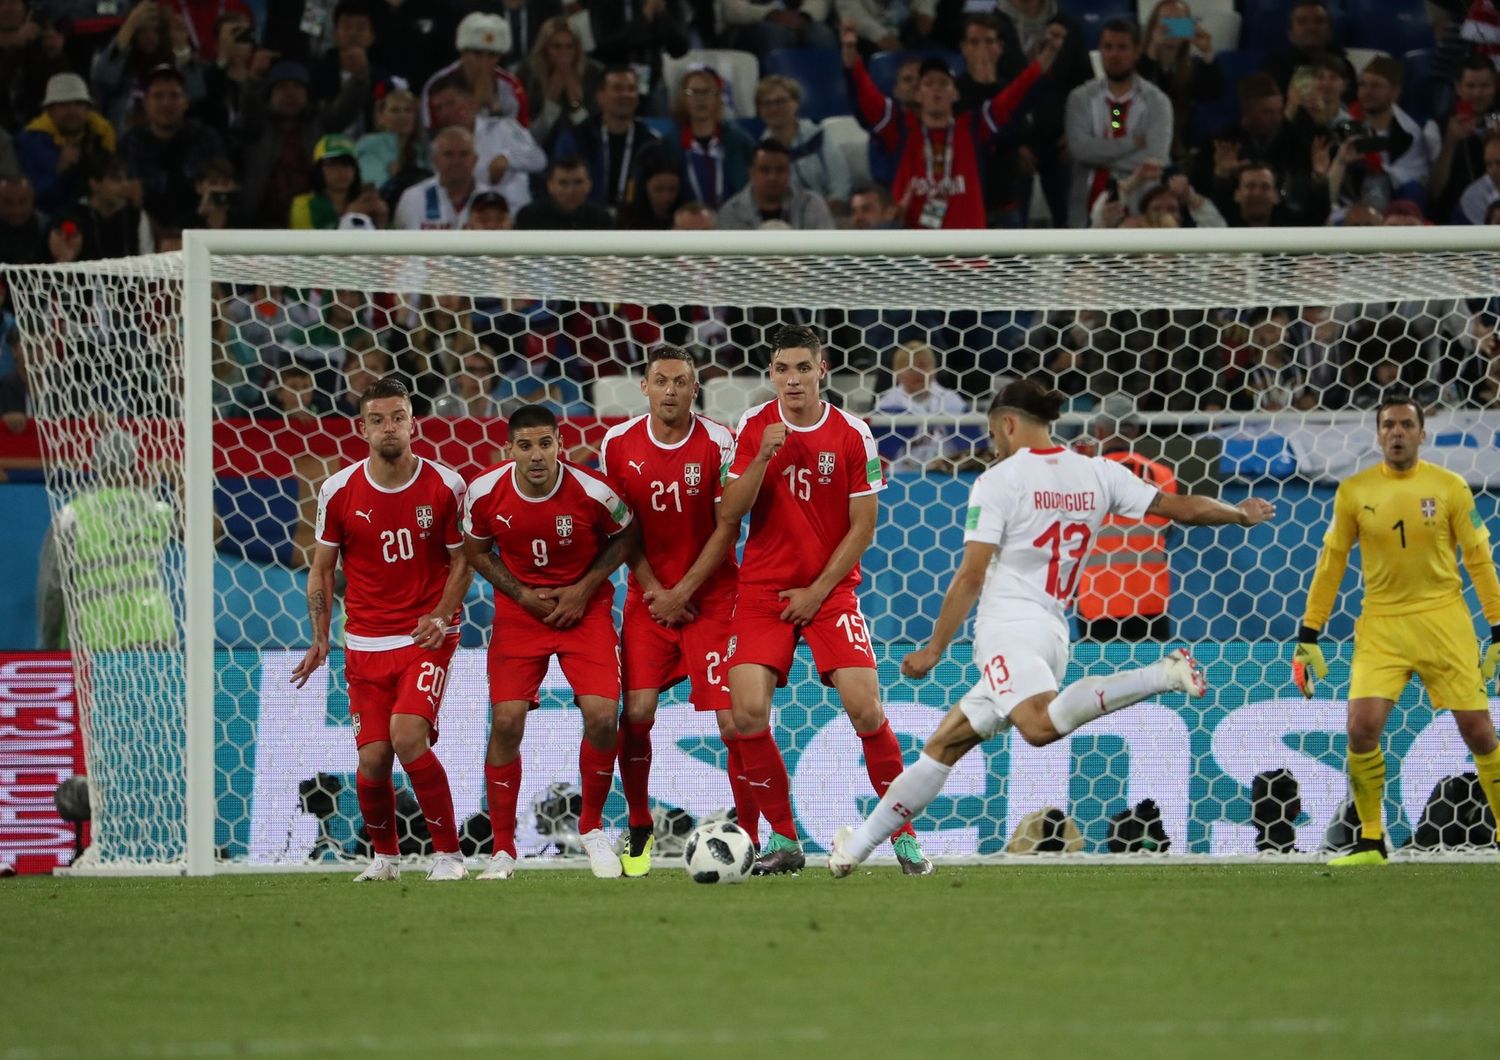 Mondiali: la Svizzera batte la Serbia 2-1 in rimonta